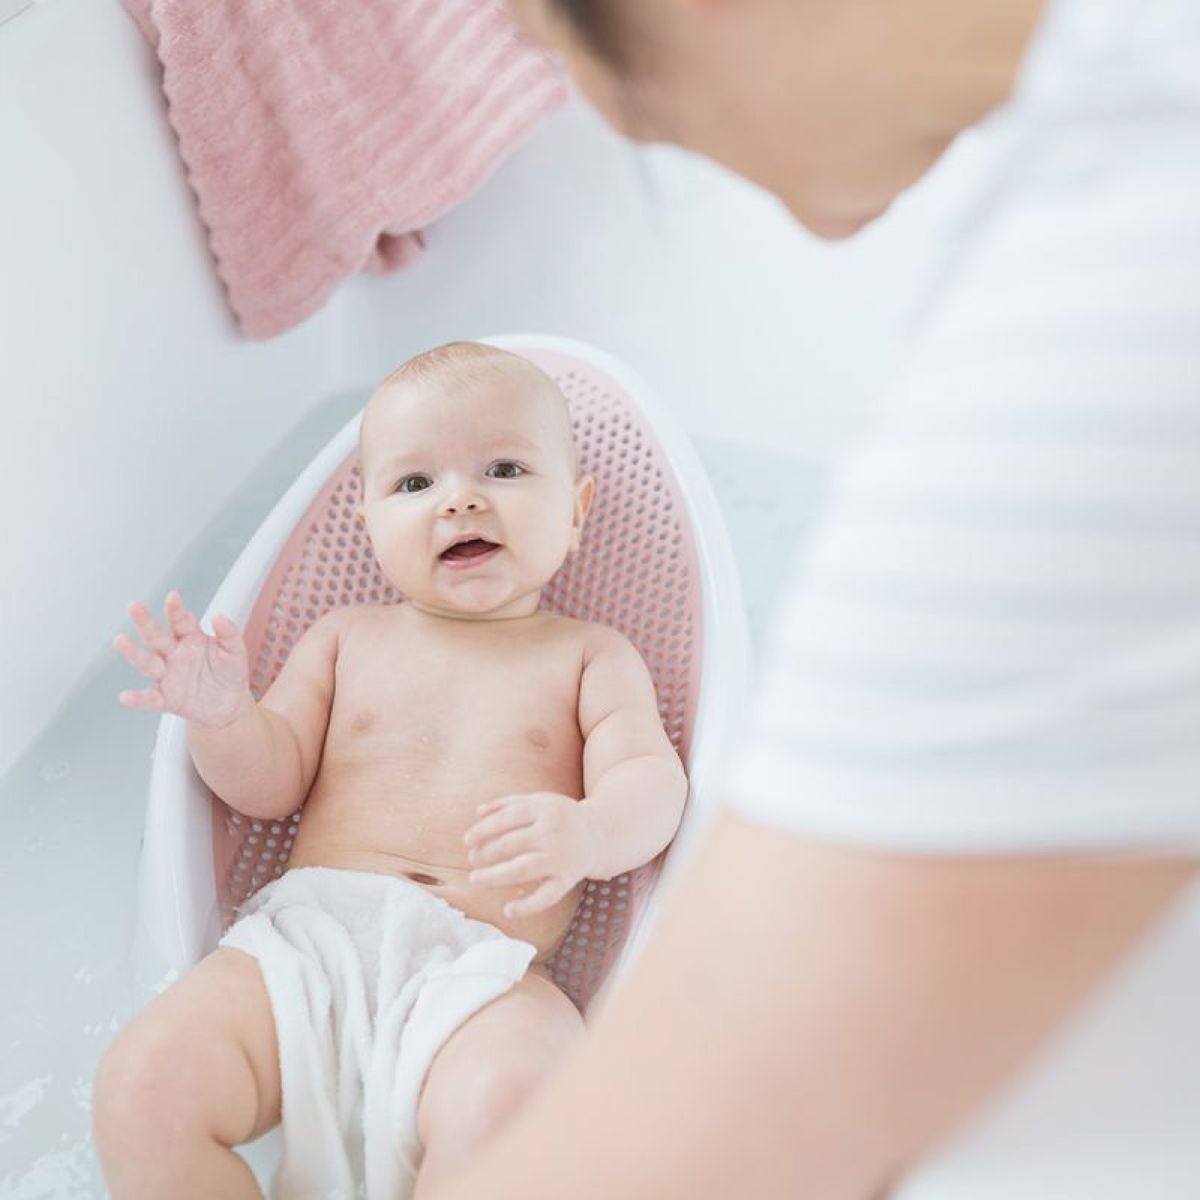 Baignoire bébé, transat et anneau de bain : quelle différence